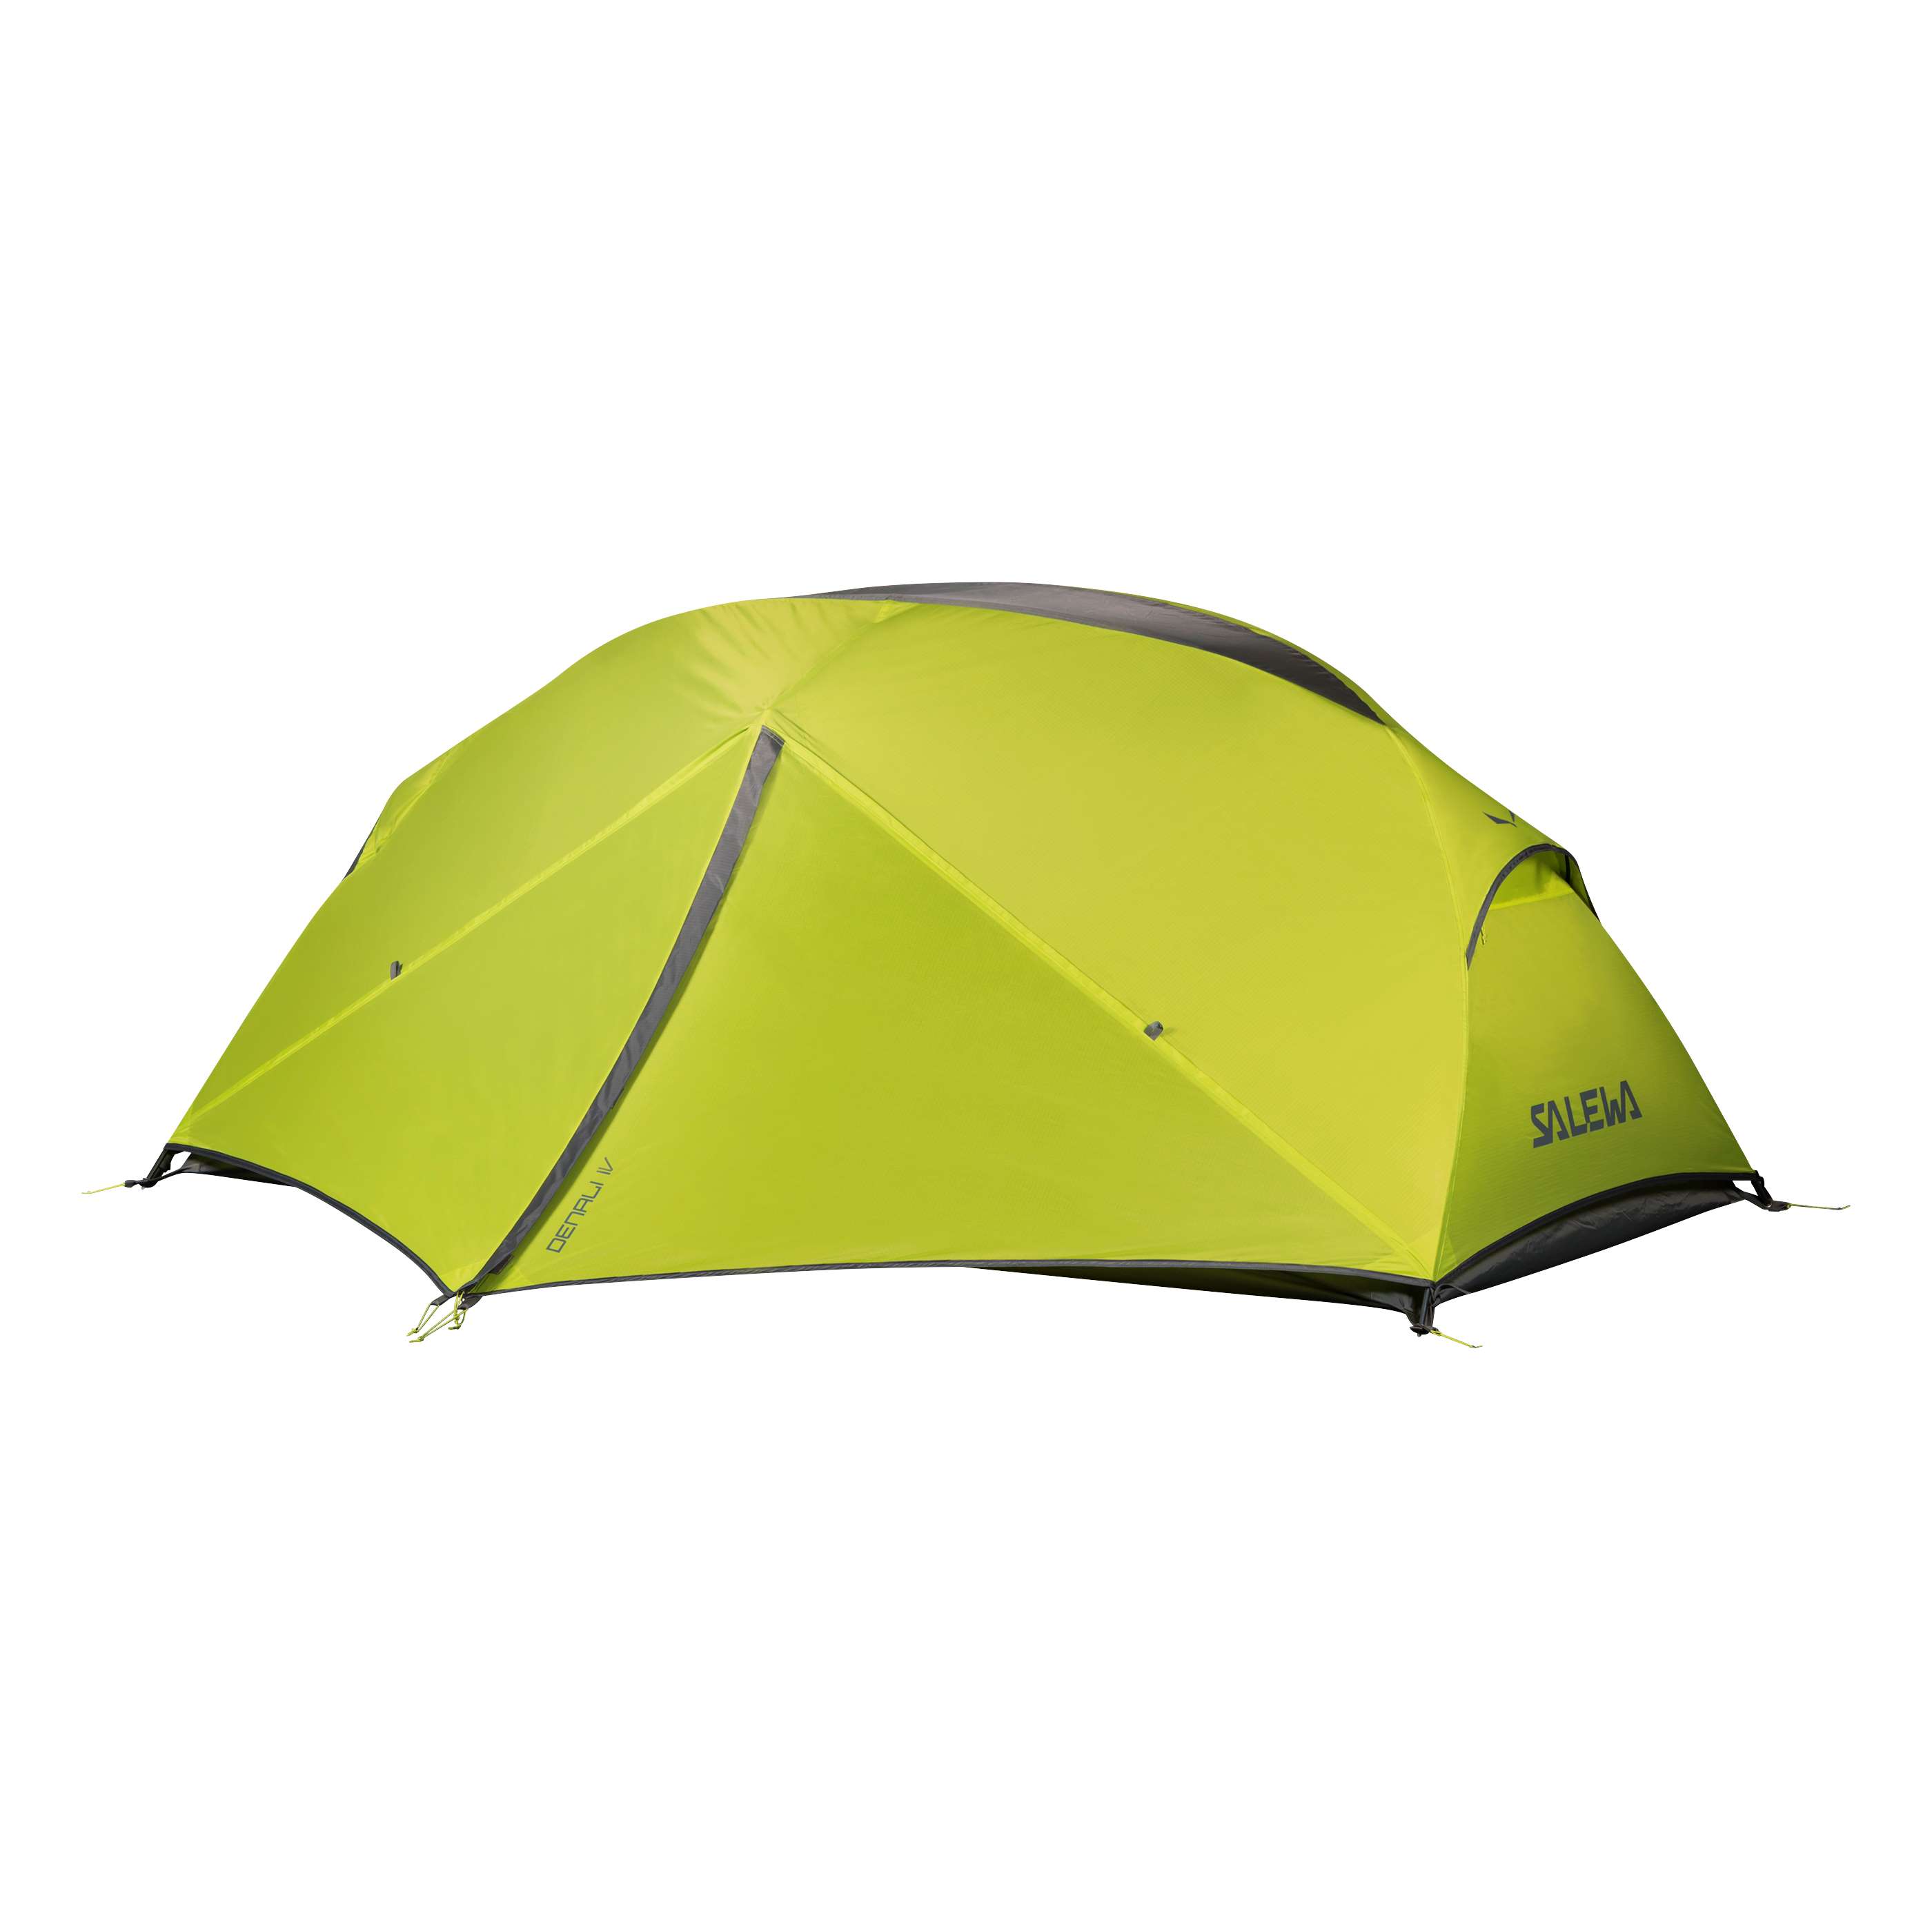 Salewa Denali IV 4-Person Tent - 4-Person Tents - Tents - Outdoor - All